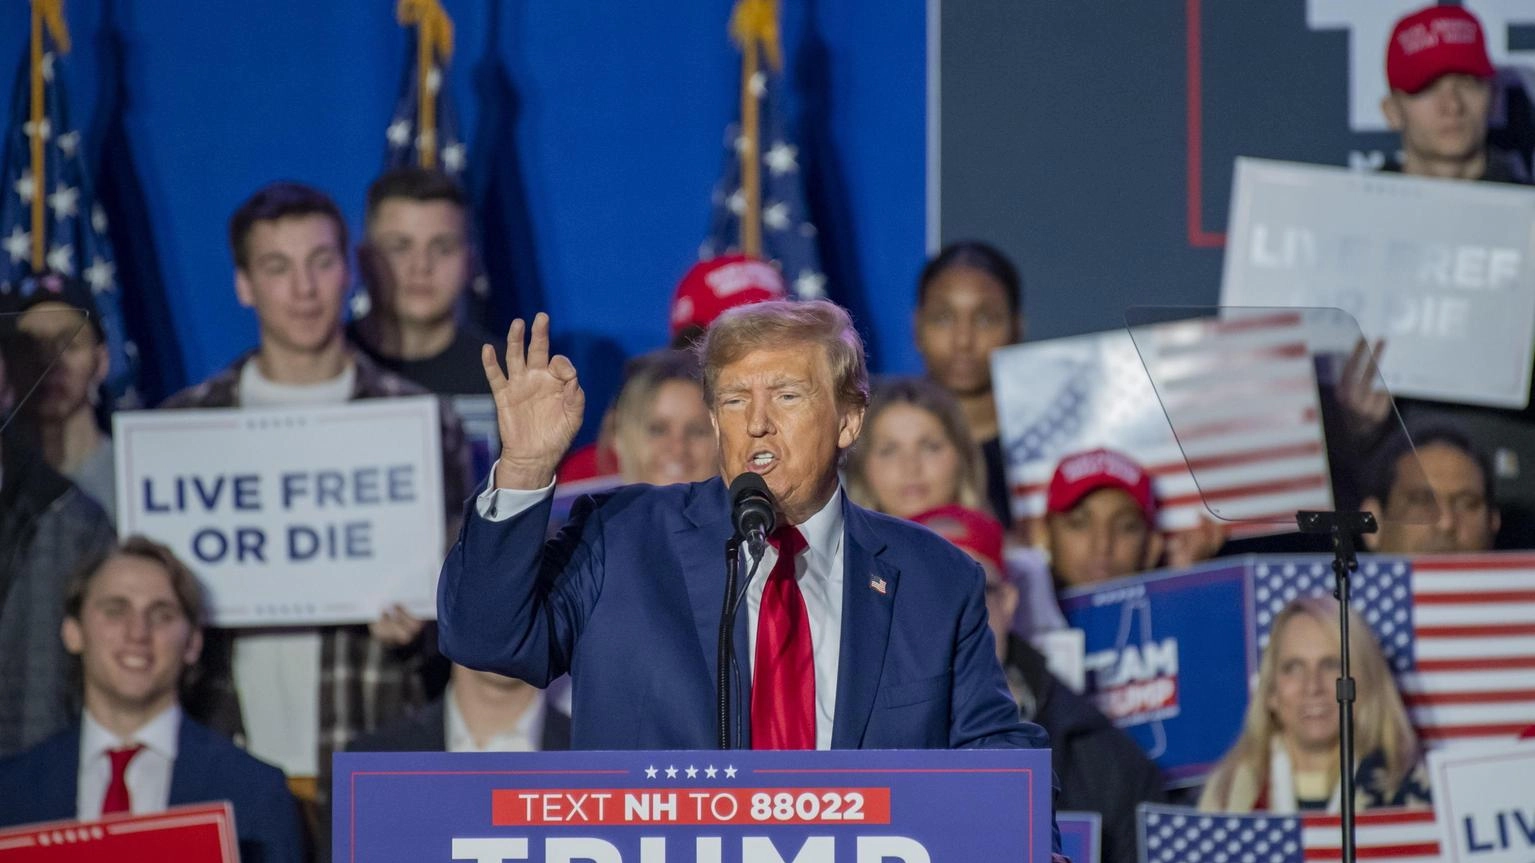 Elettori Illinois e Massachusetts, rimuovere Trump da primarie